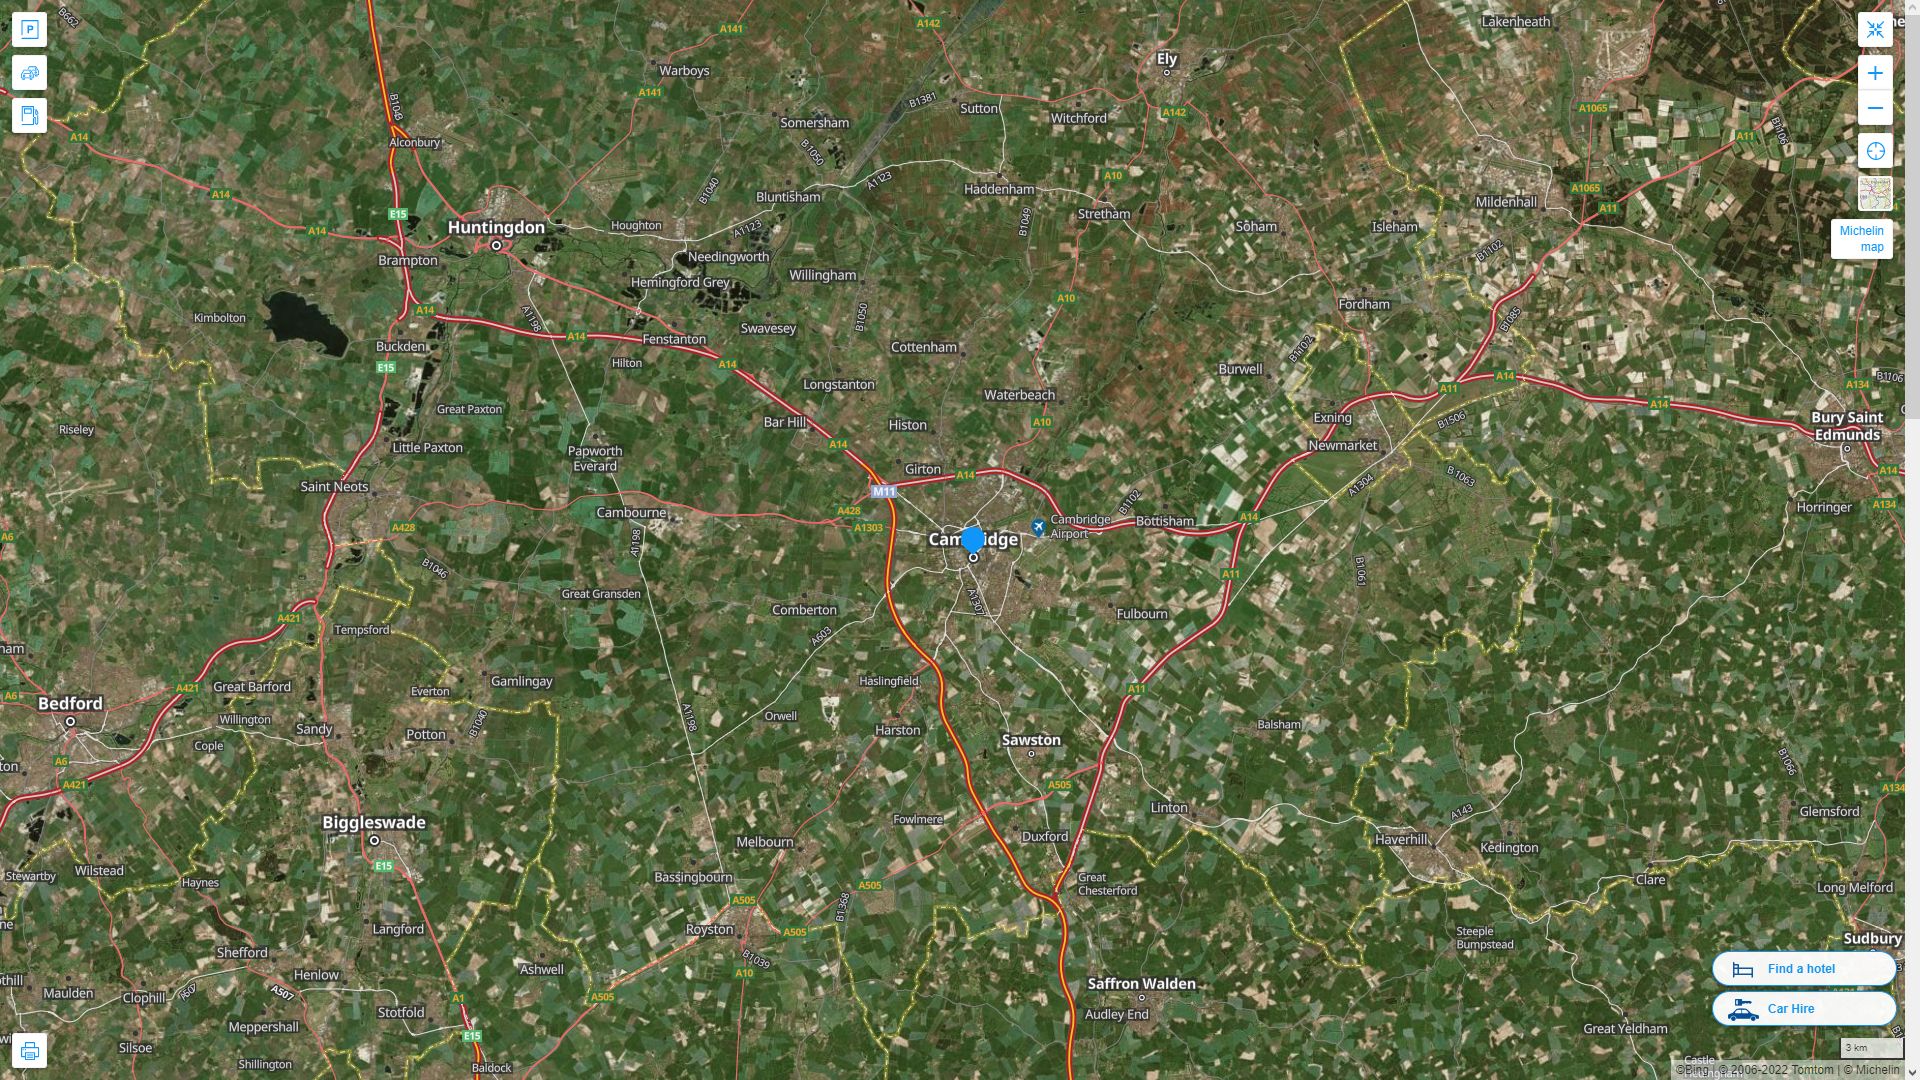 Cambridge Royaume Uni Autoroute et carte routiere avec vue satellite